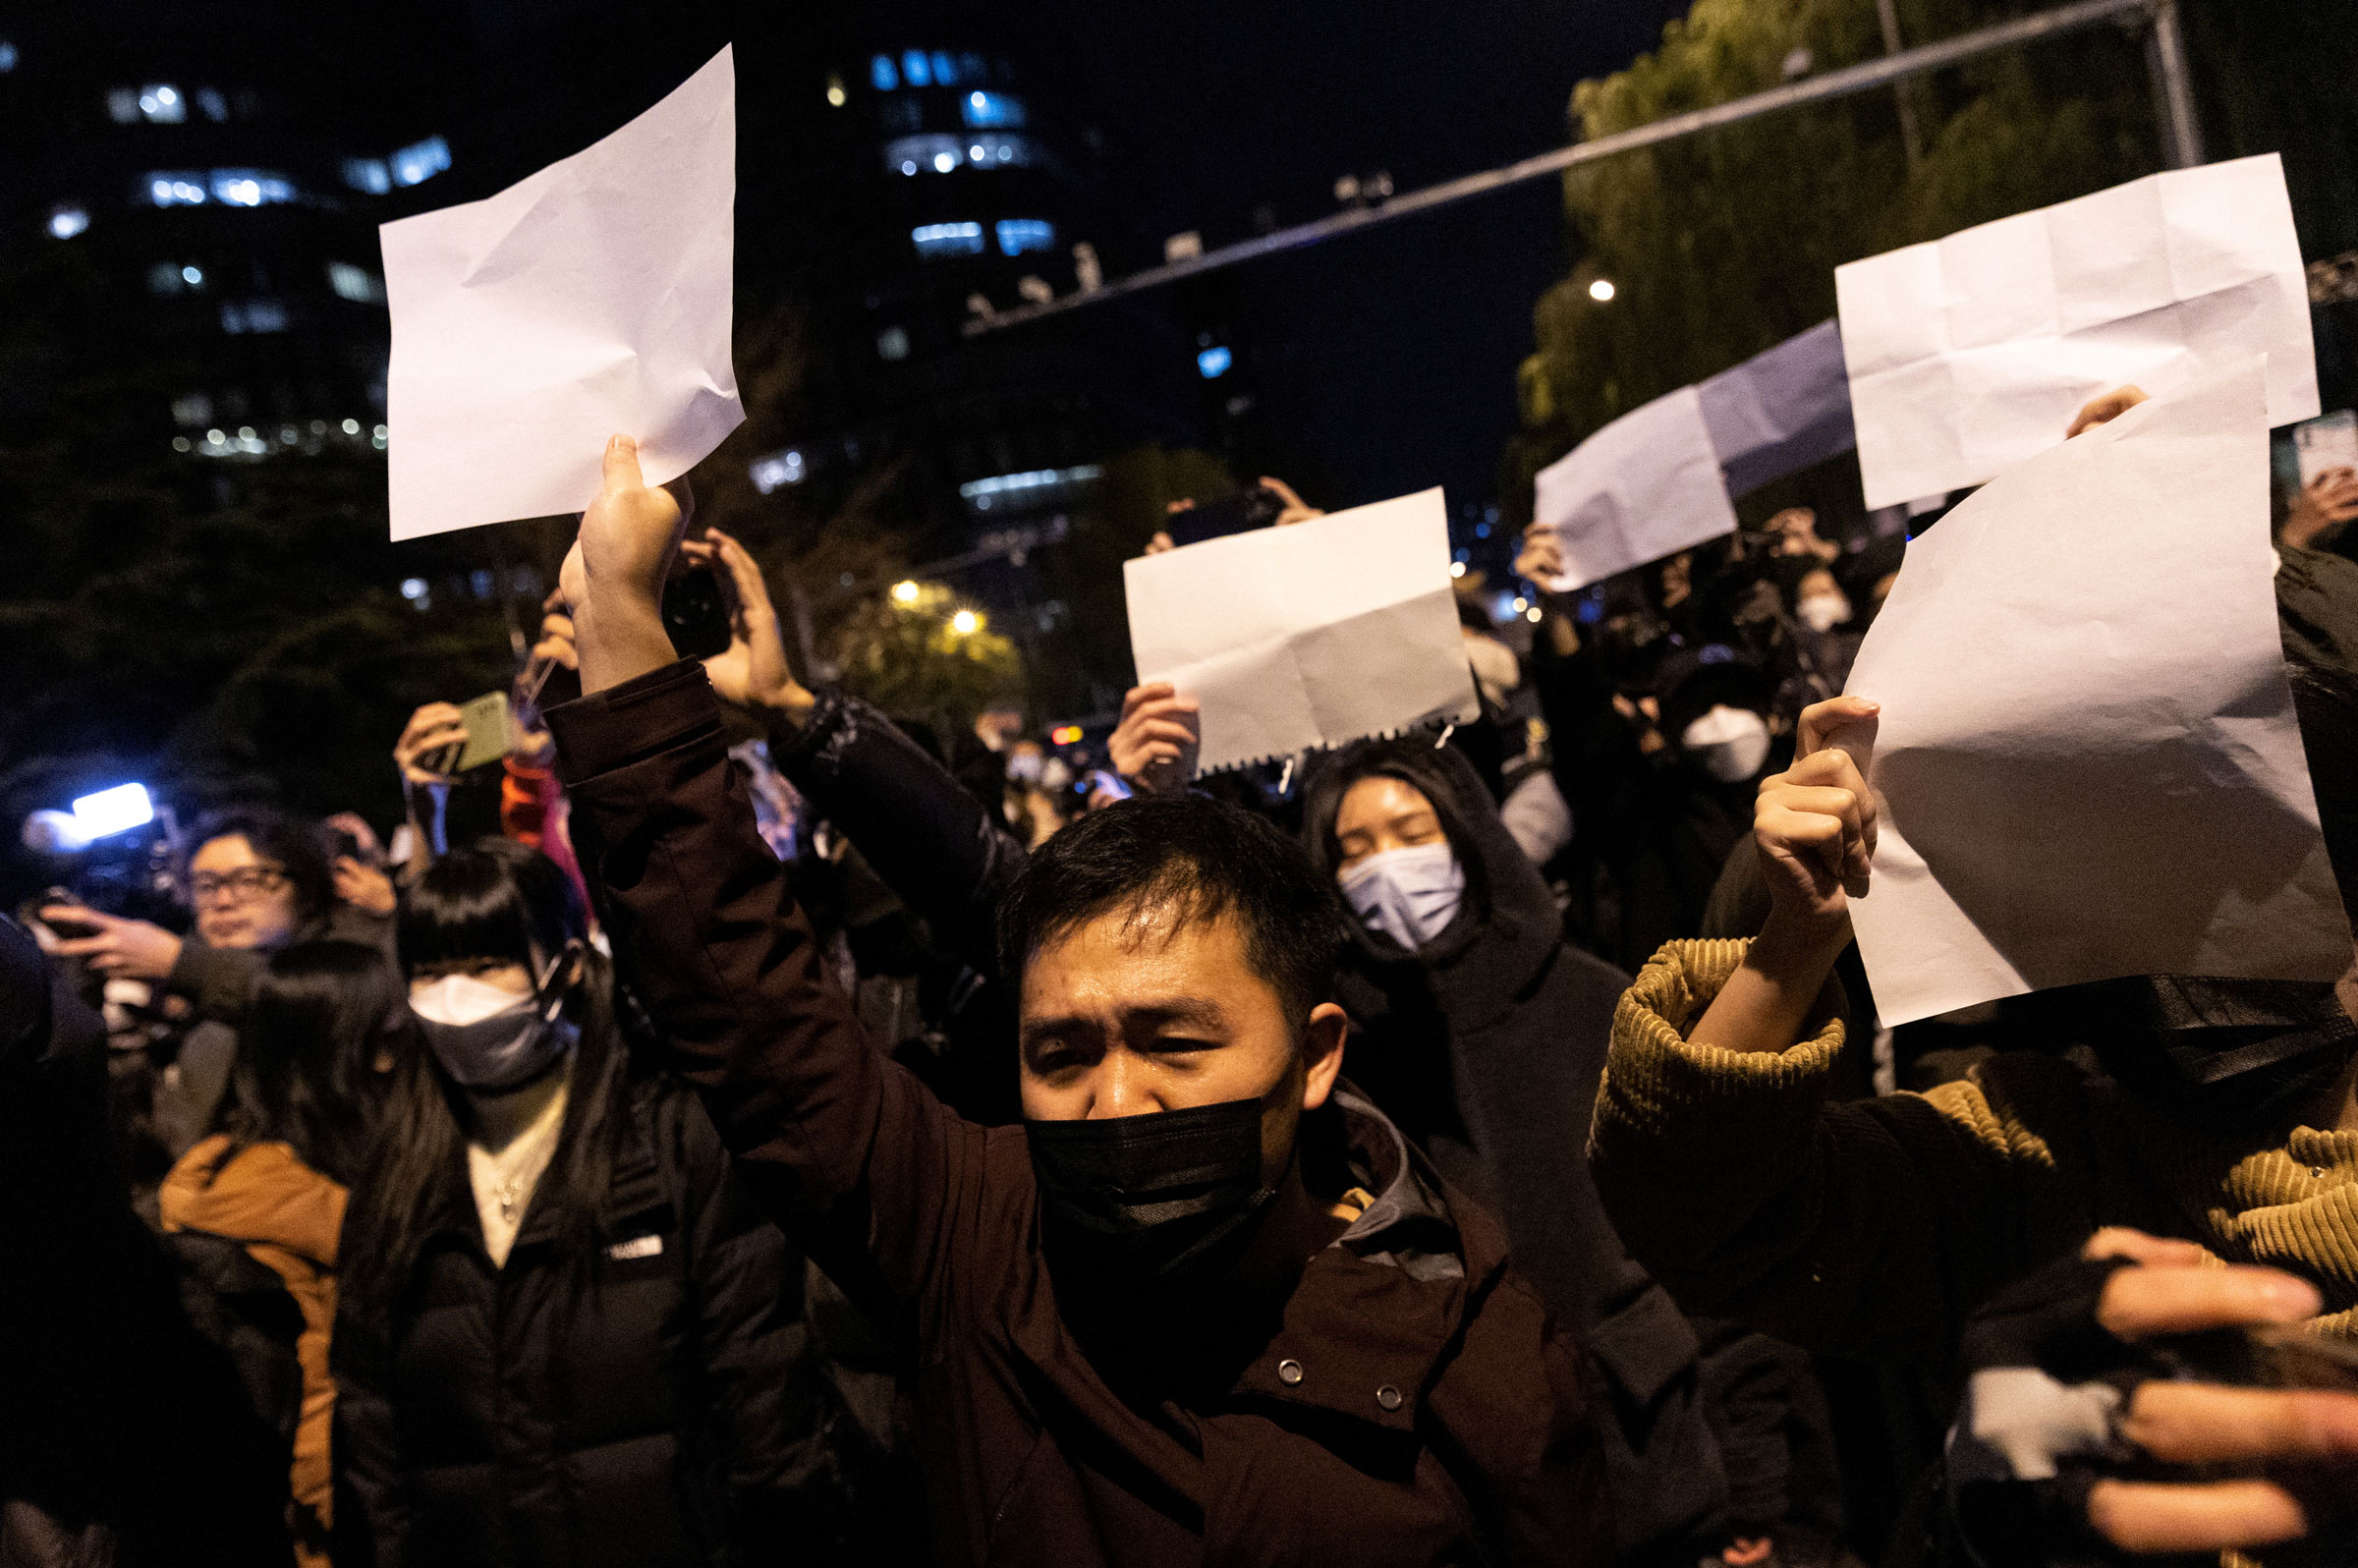 28 Kasım 2022'de Çin'in Pekin kentinde COVID-19 salgınları devam ederken Urumçi'de çıkan yangının kurbanları için düzenlenen nöbetin ardından insanlar COVID-19 kısıtlamalarını protesto etmek için beyaz kağıtlar tutuyor. (Thomas Peter— Reuters)